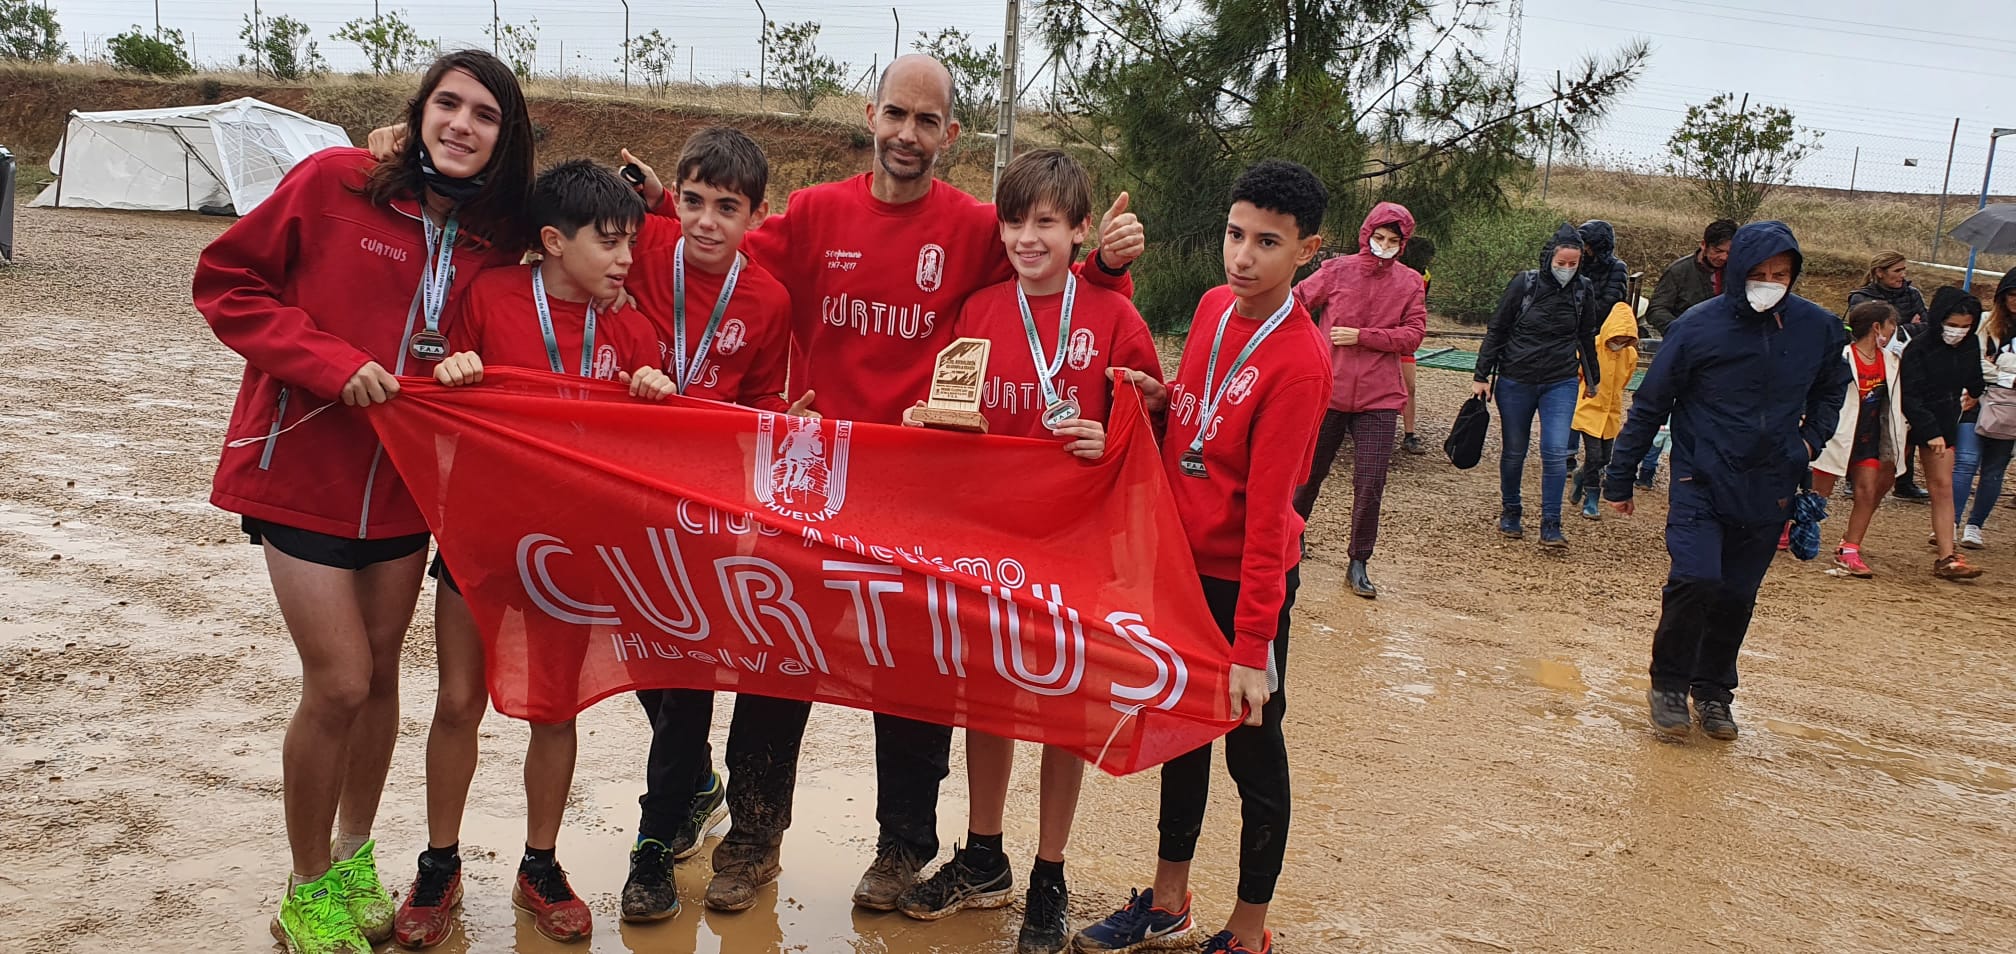 Destacada actuación de los atletas onubenses en el Campeonato de Andalucía de Campo a Través